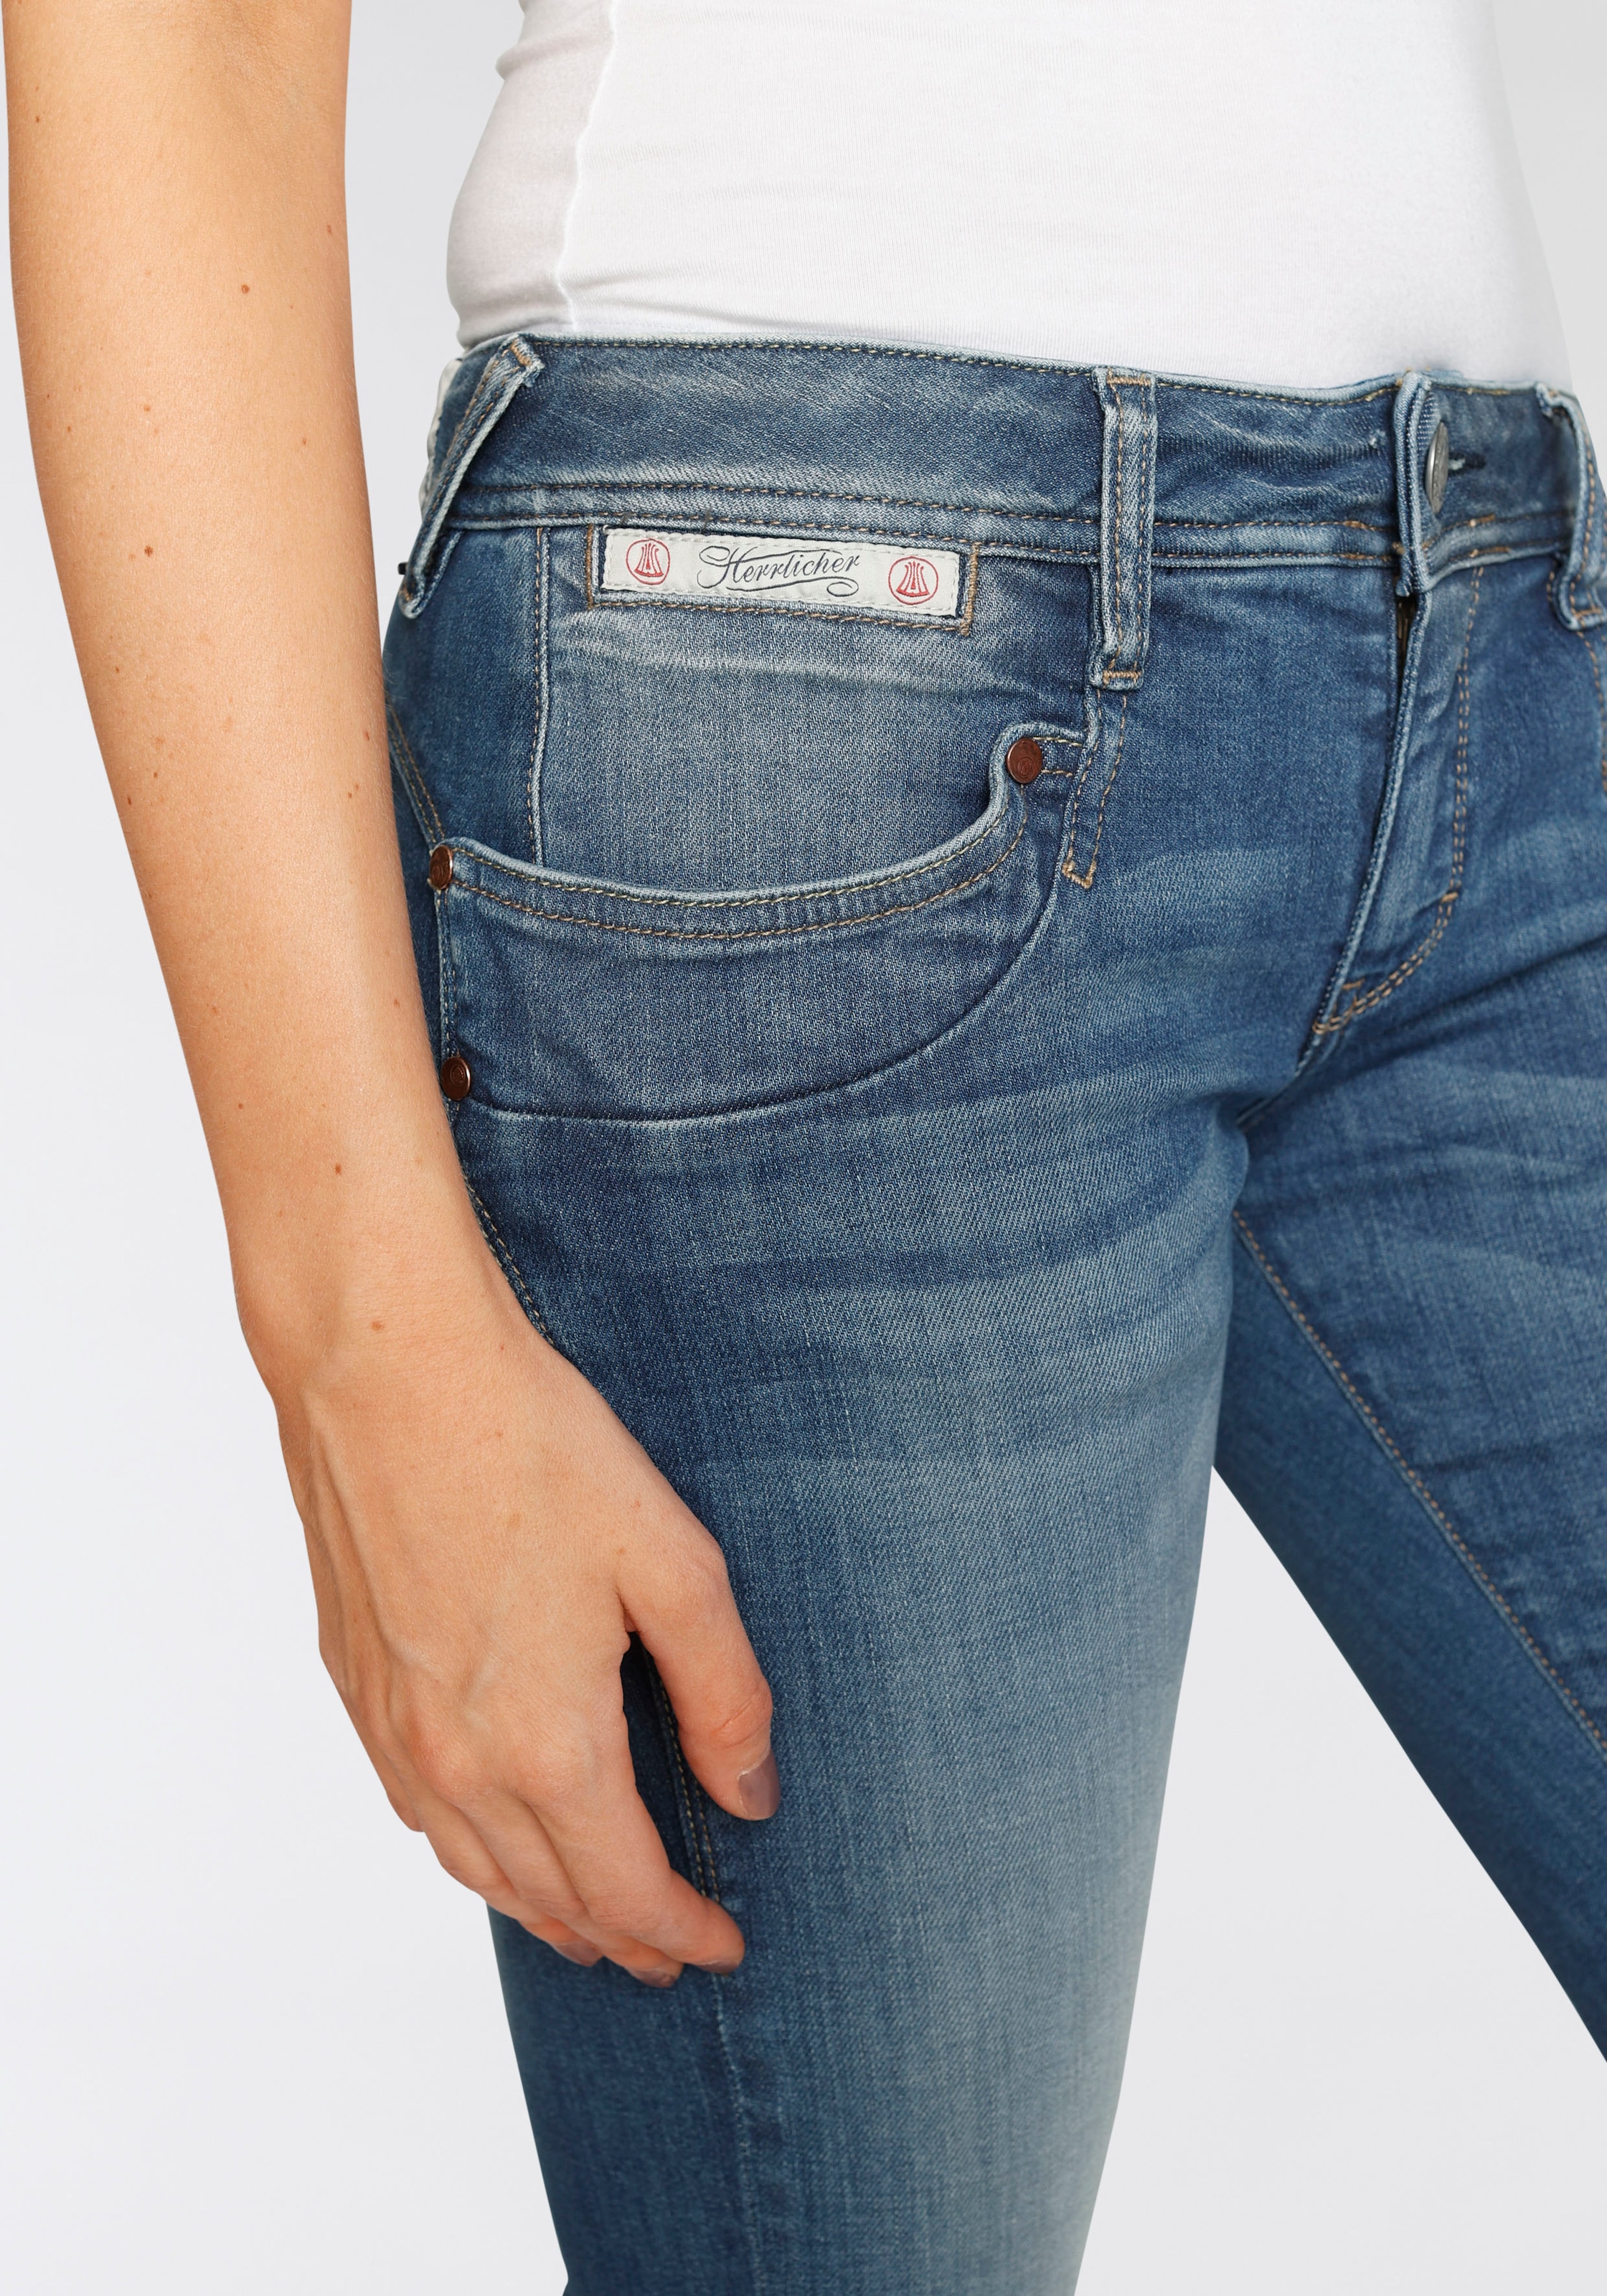 Kitotex Herrlicher ORGANIC«, umweltfreundlich Technology dank kaufen »PIPER Slim-fit-Jeans SLIM